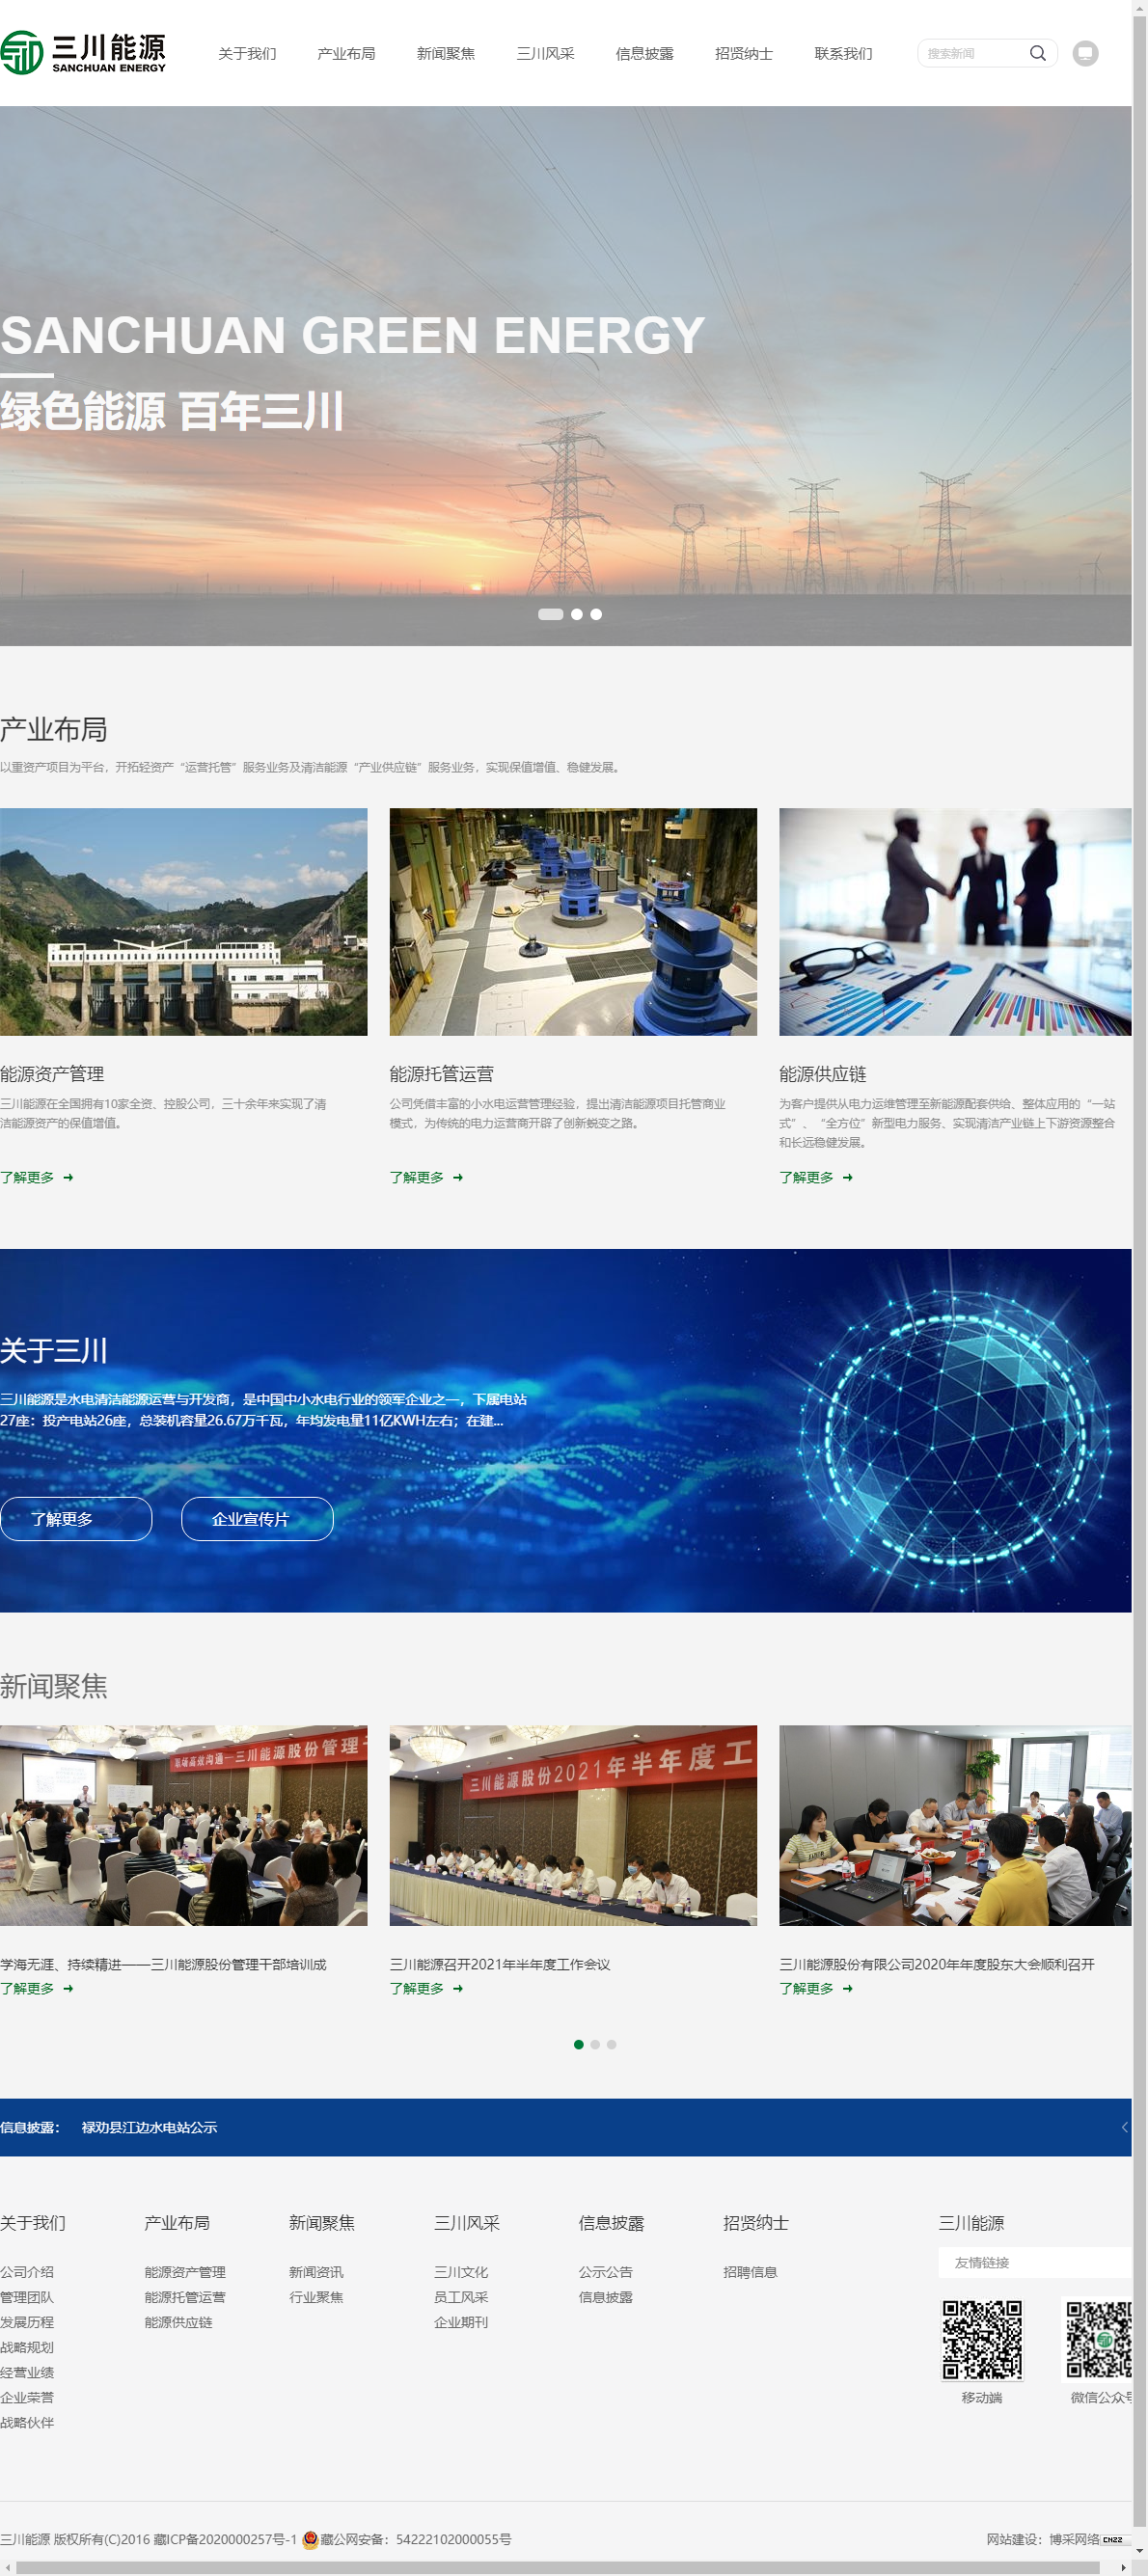 三川能源股份有限公司网站案例